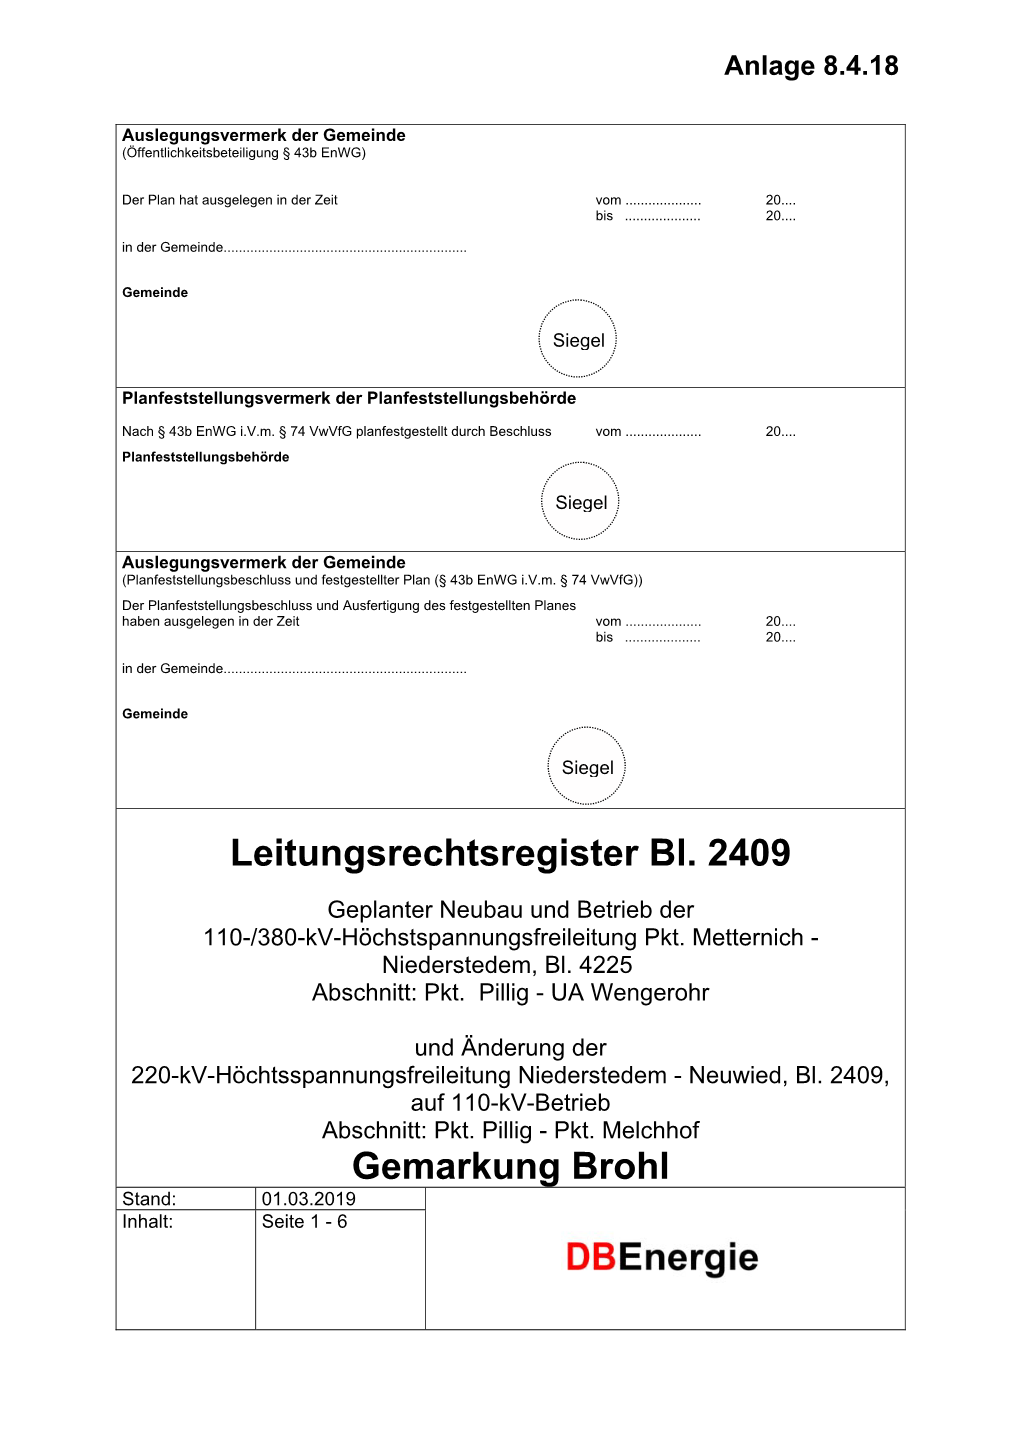 Gemarkung Brohl Stand: 01.03.2019 Inhalt: Seite 1 - 6